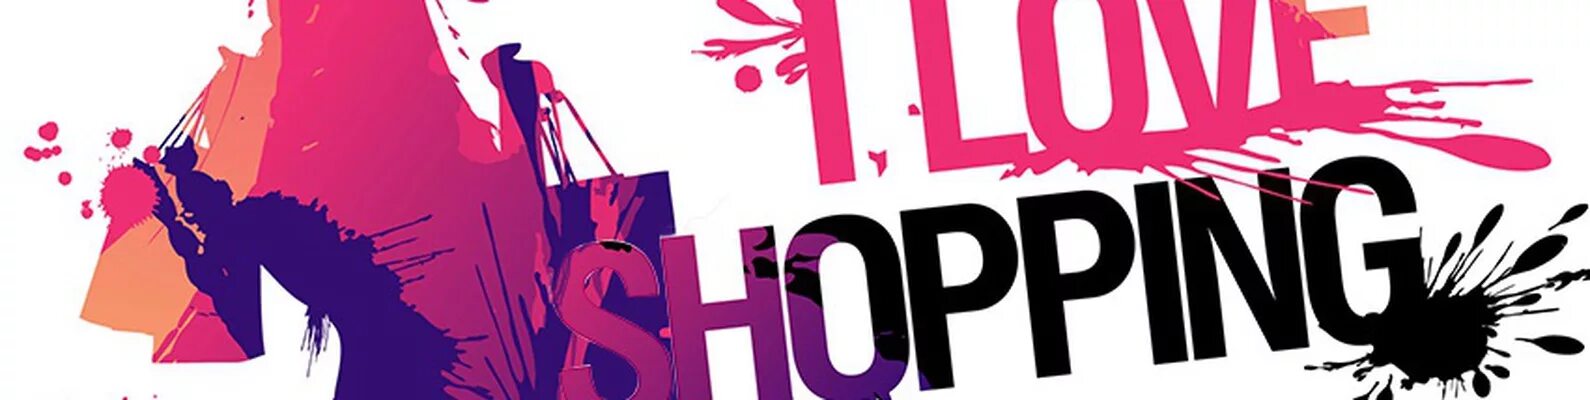 Big love shop. Логотип магазина молодежной одежды. Обложка для fb. Магазин одежды Facebook Cover.